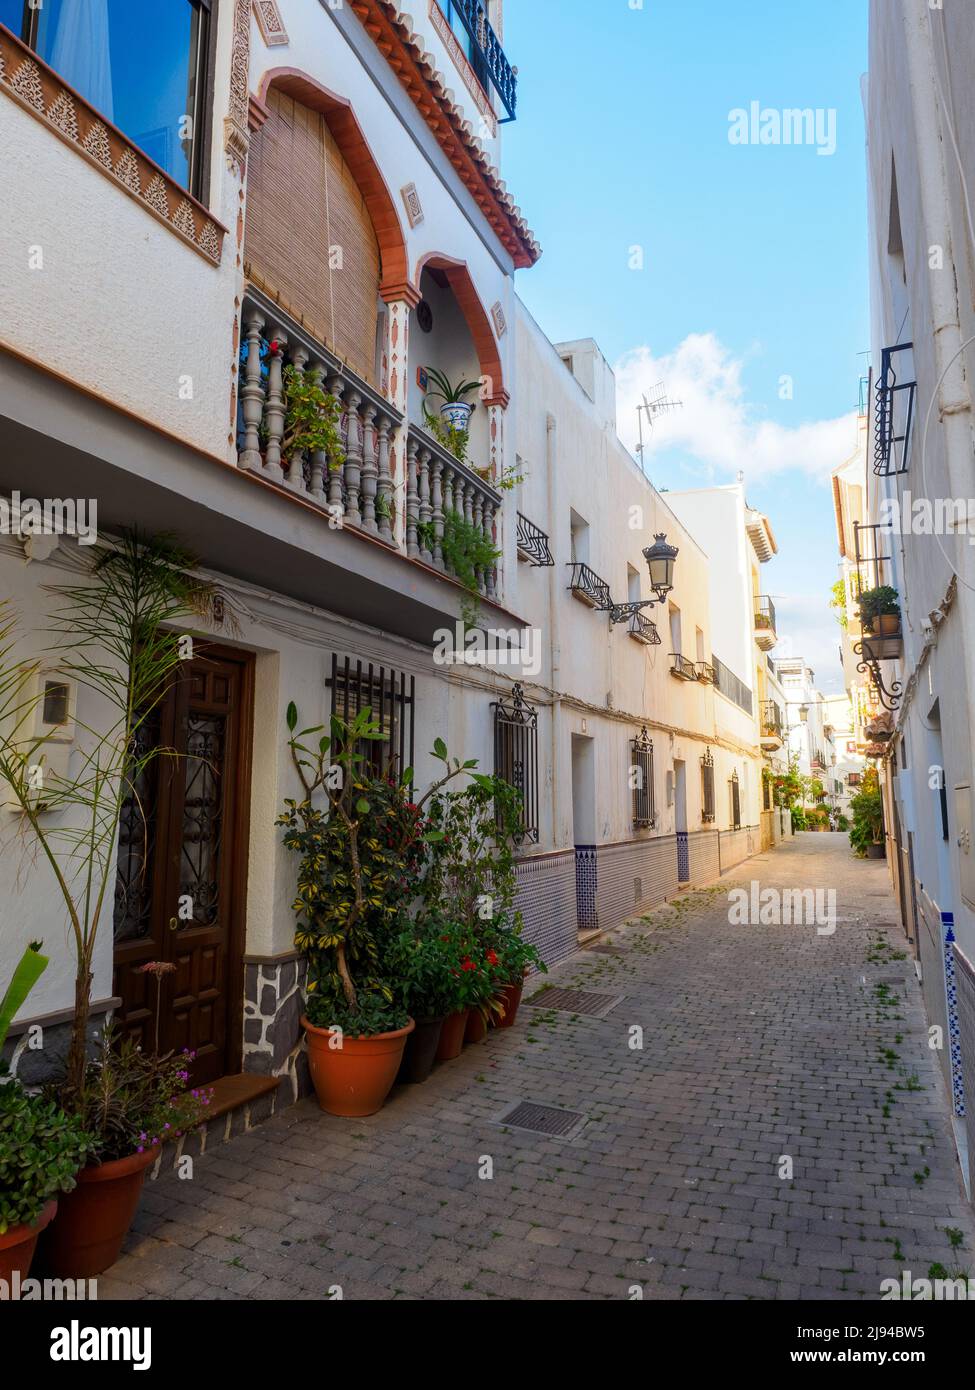 Straße im alten Teil der touristischen Stadt Almunecar an der costa Tropical - Andalusien, Spanien Stockfoto